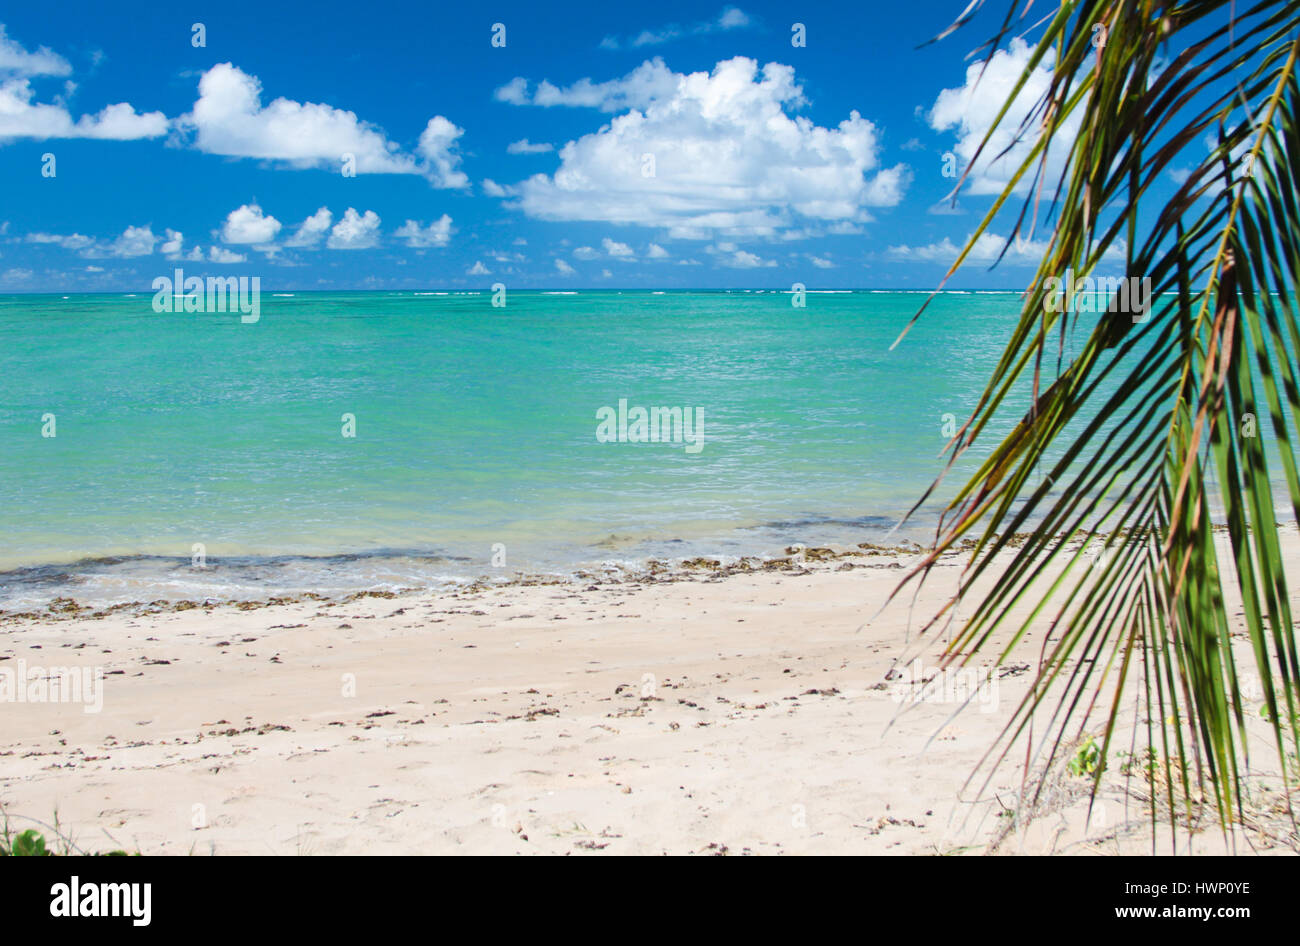 Les vacances à la plage : mer turquoise de Patacho Beach, Alagoas, Brésil, considéré comme l'une des plus belles plages du Brésil. Banque D'Images